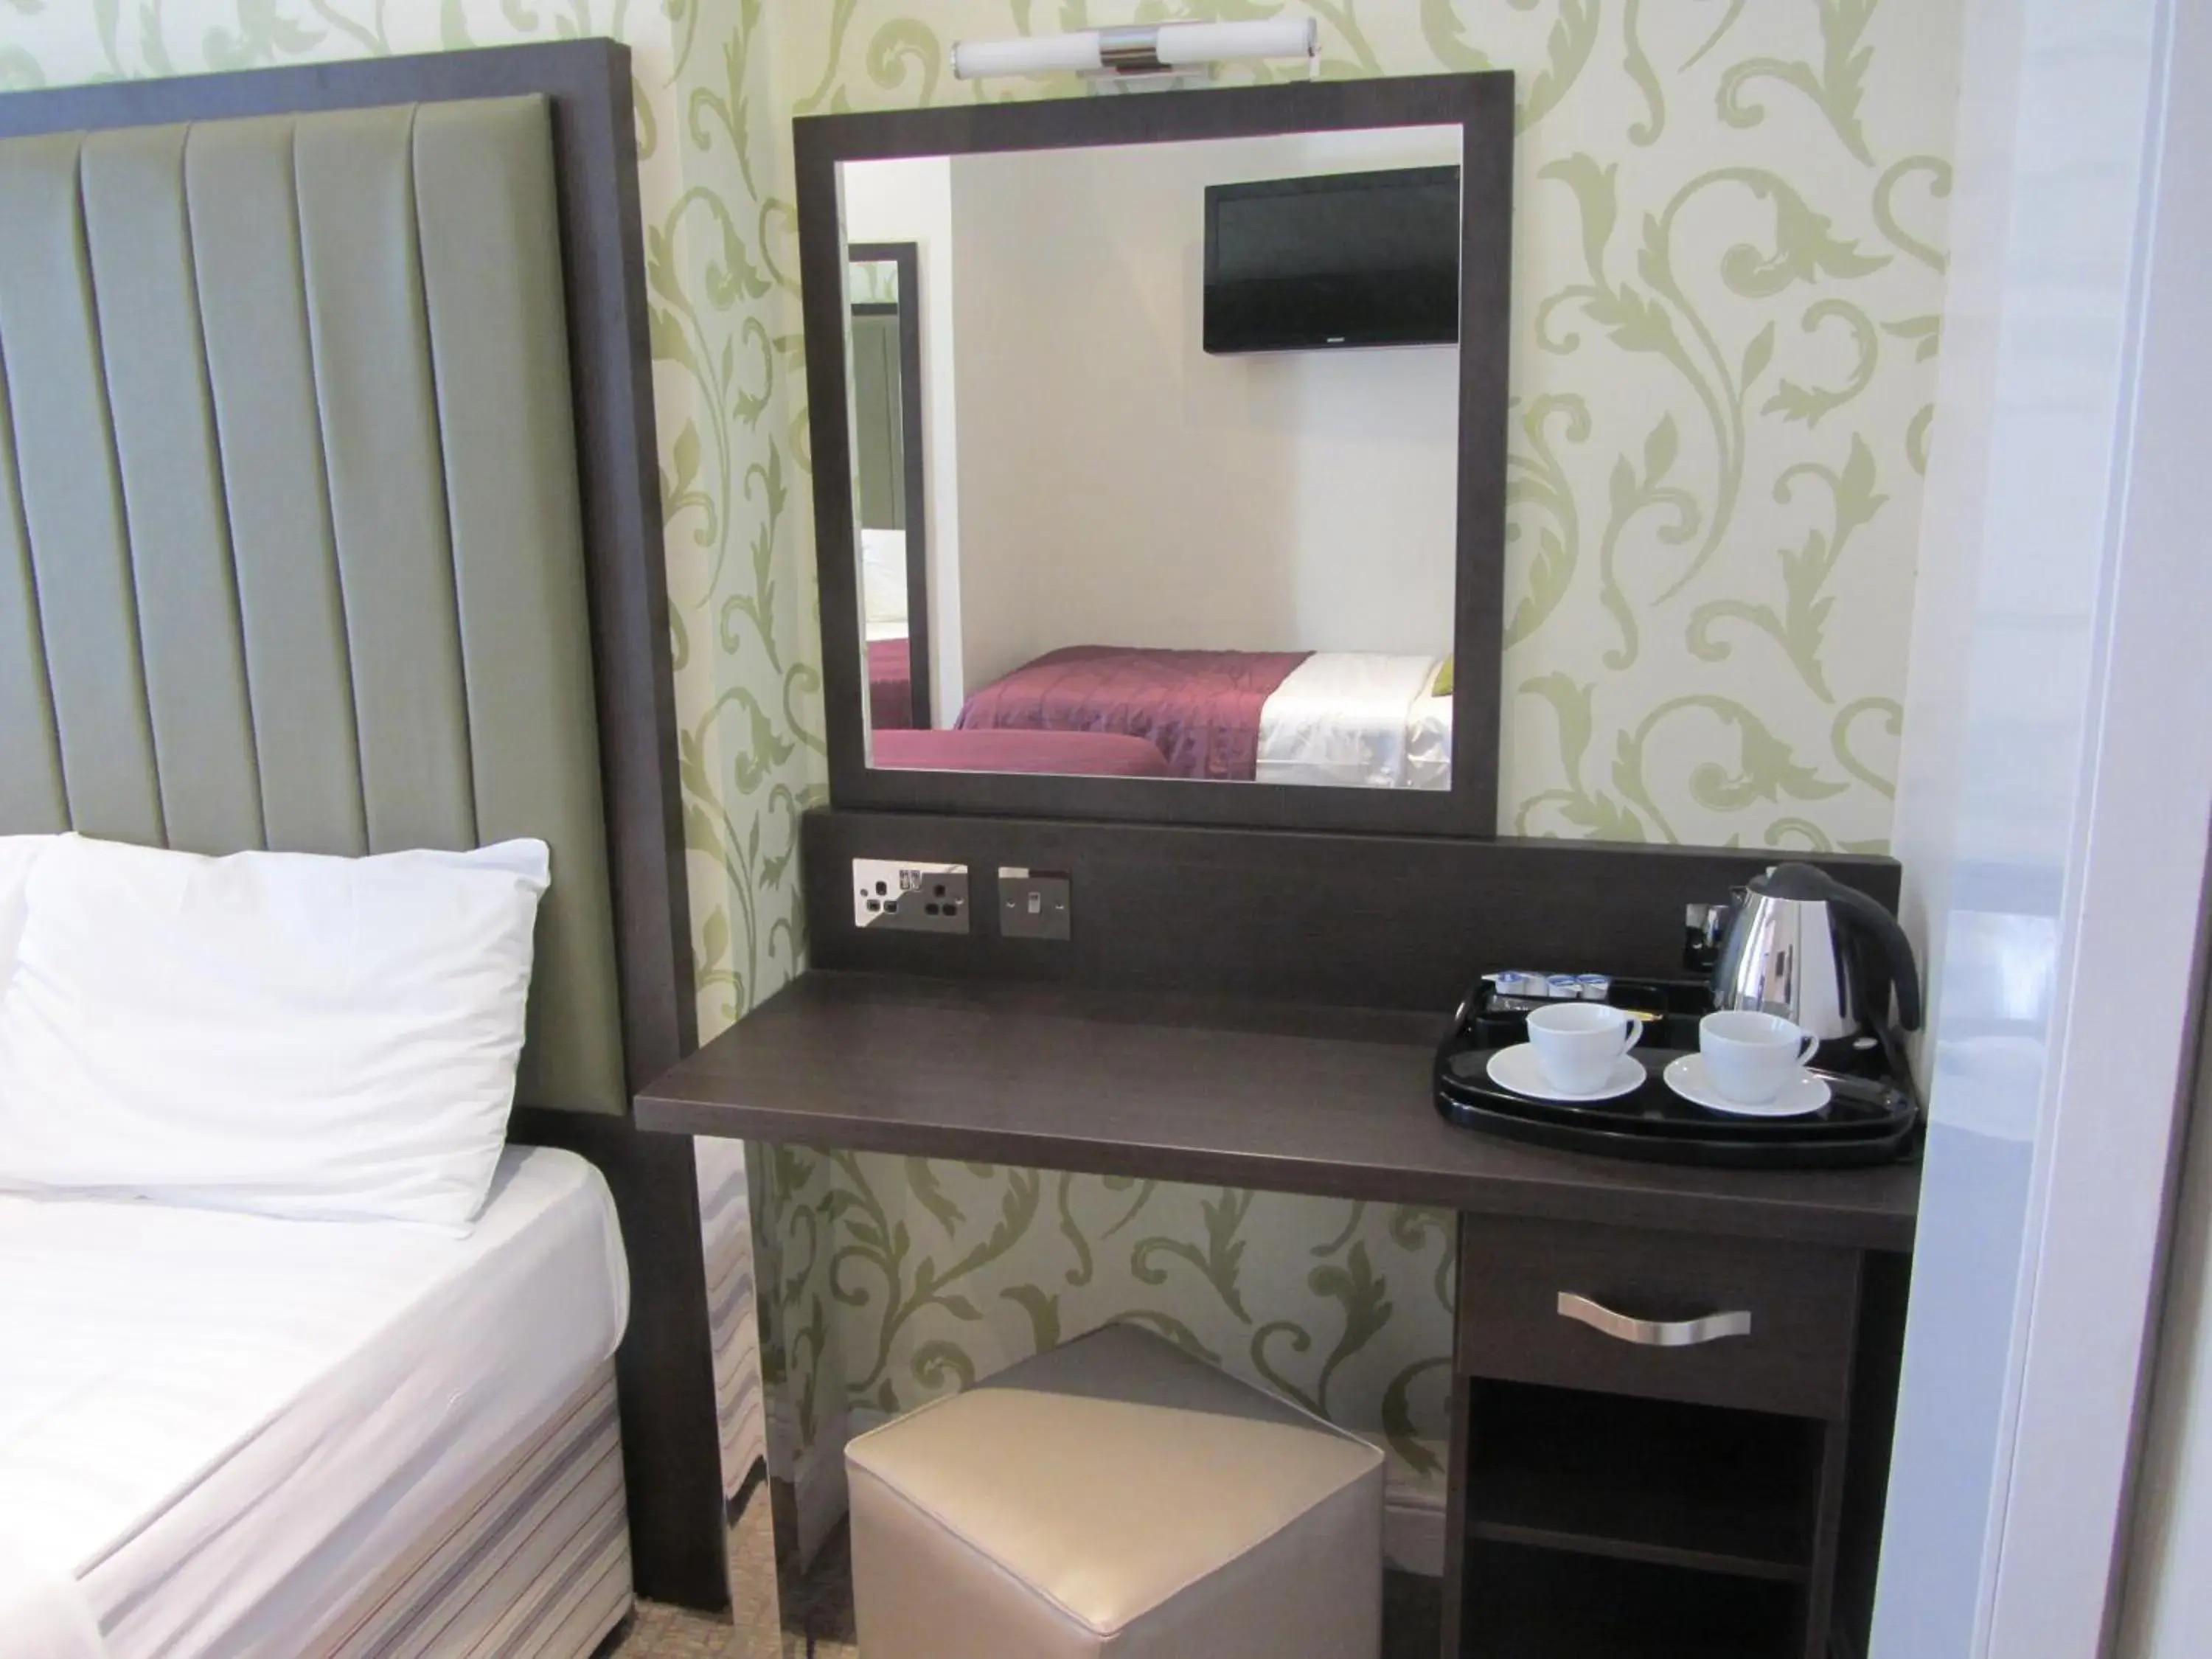 Coffee/tea facilities, Bathroom in Goodwood Hotel